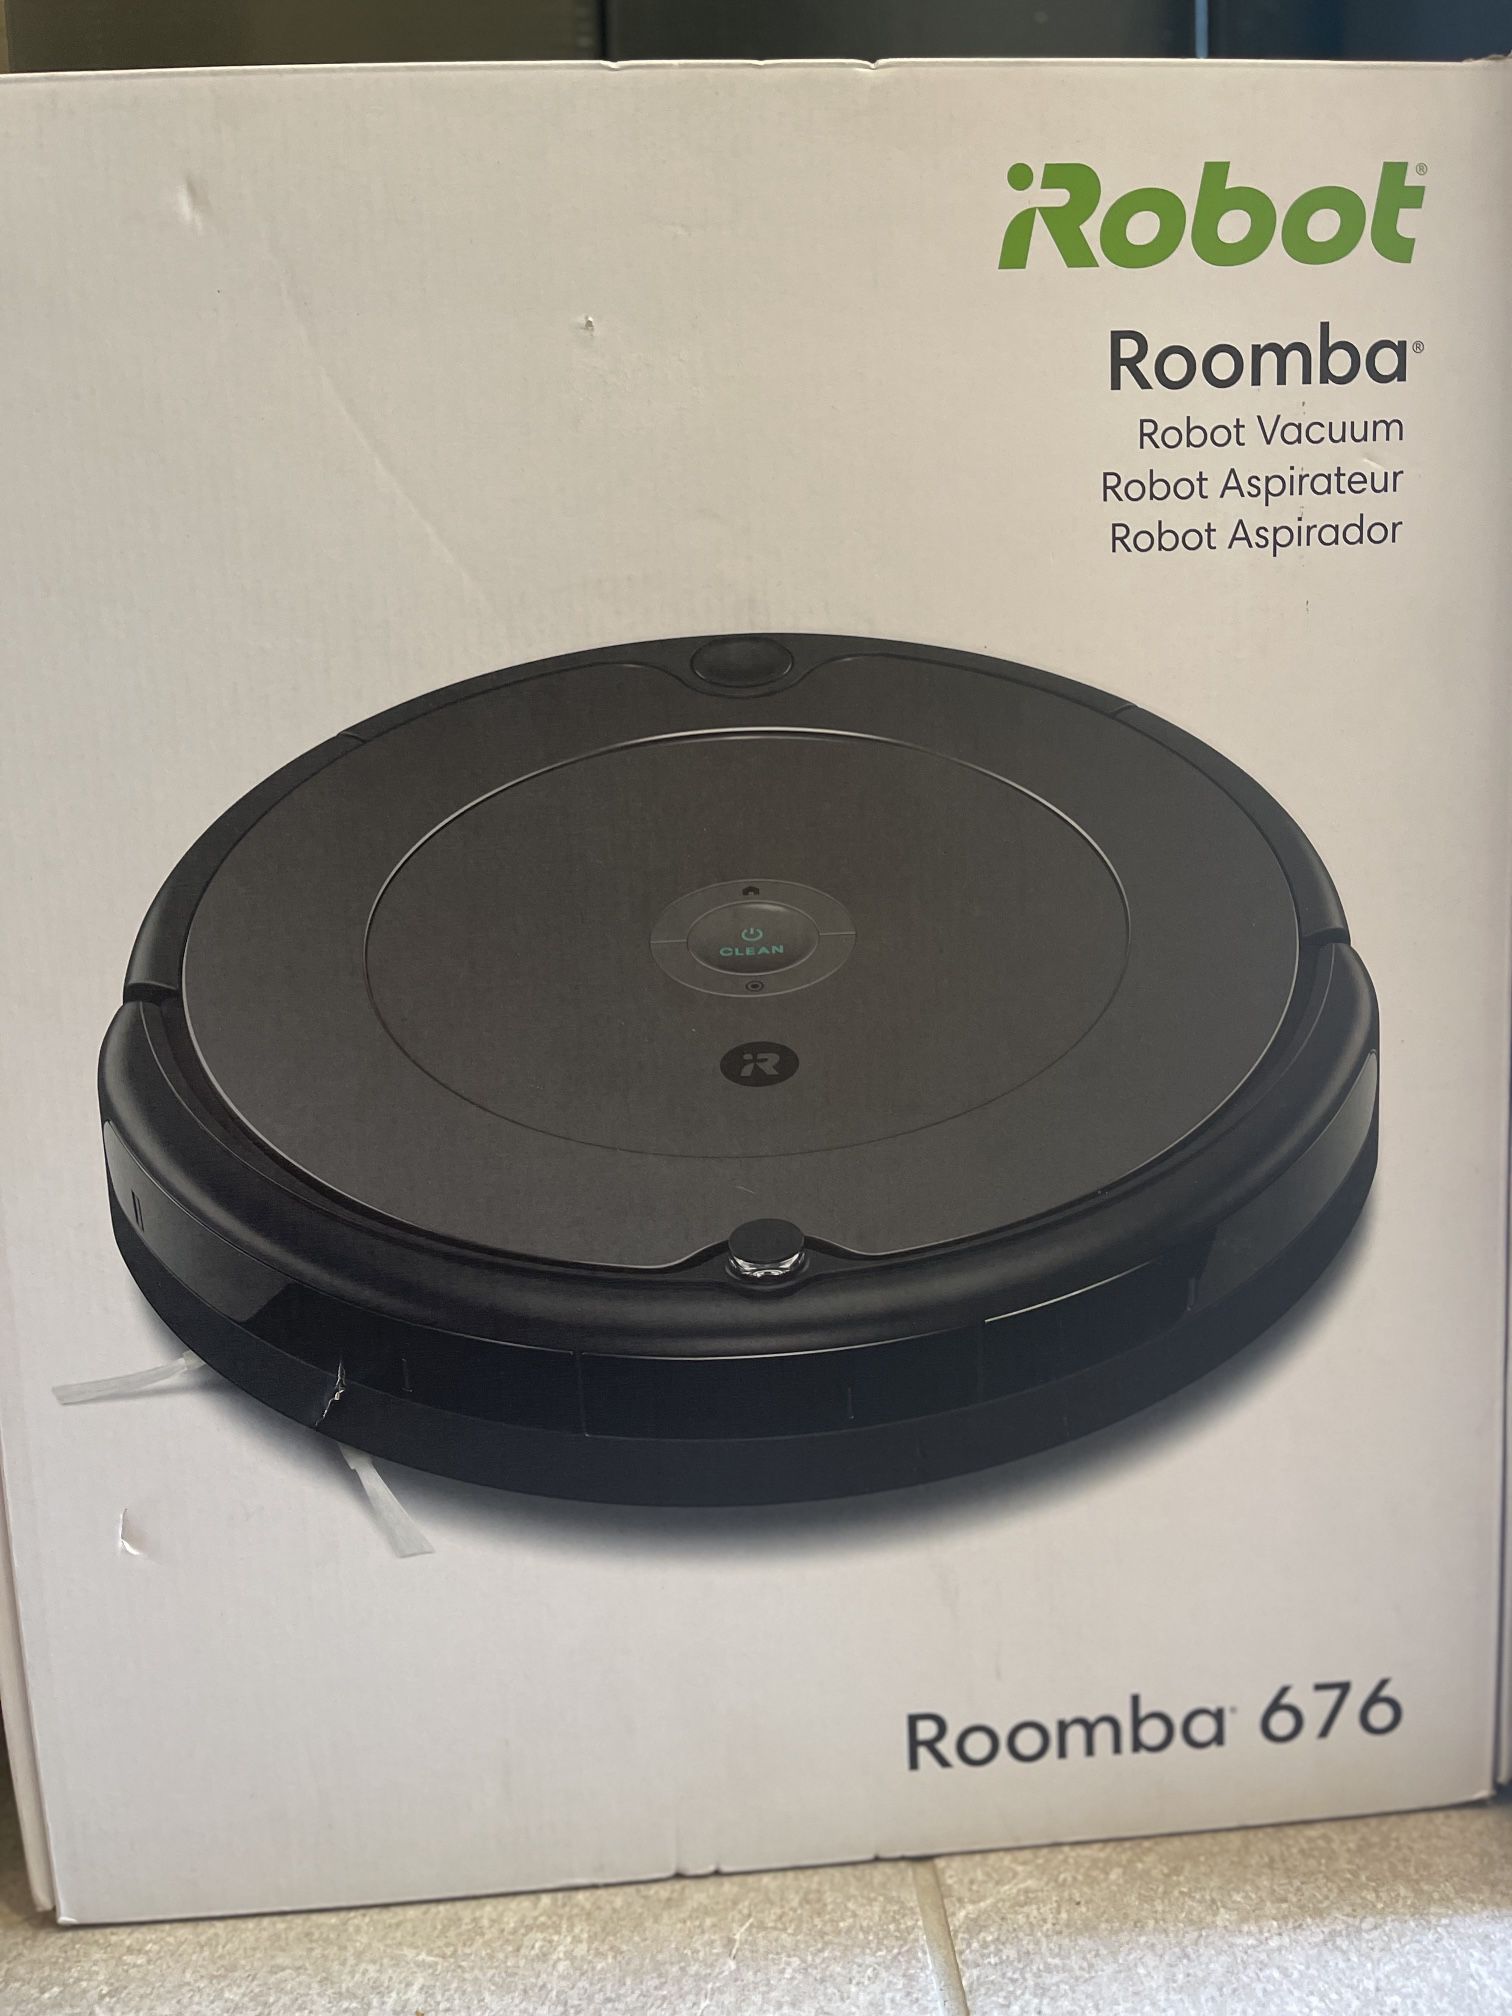 Roomba 676 